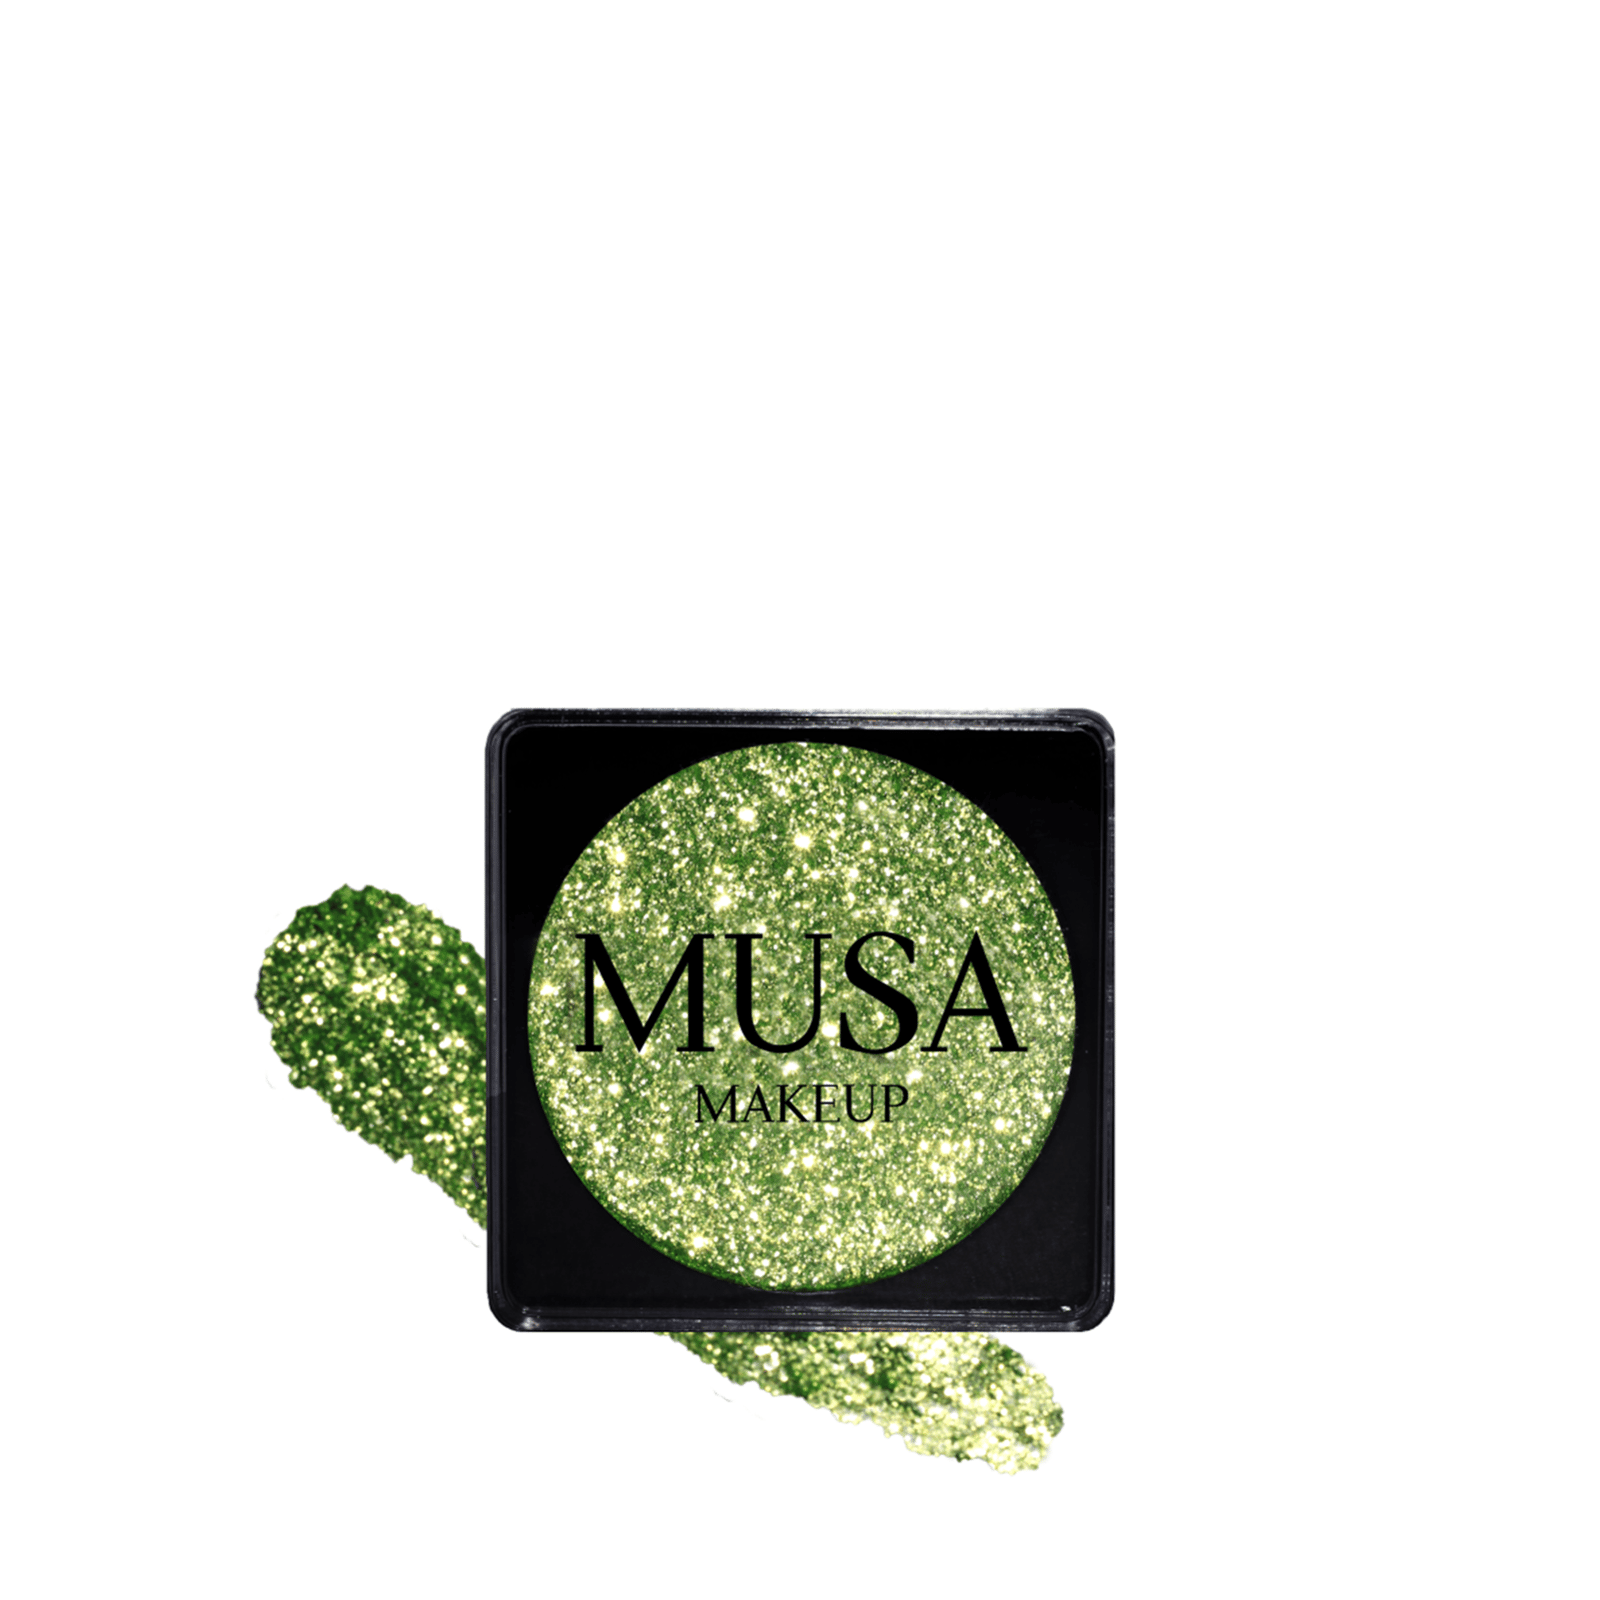 MUSA Makeup Creamy Glitter Savage 4g